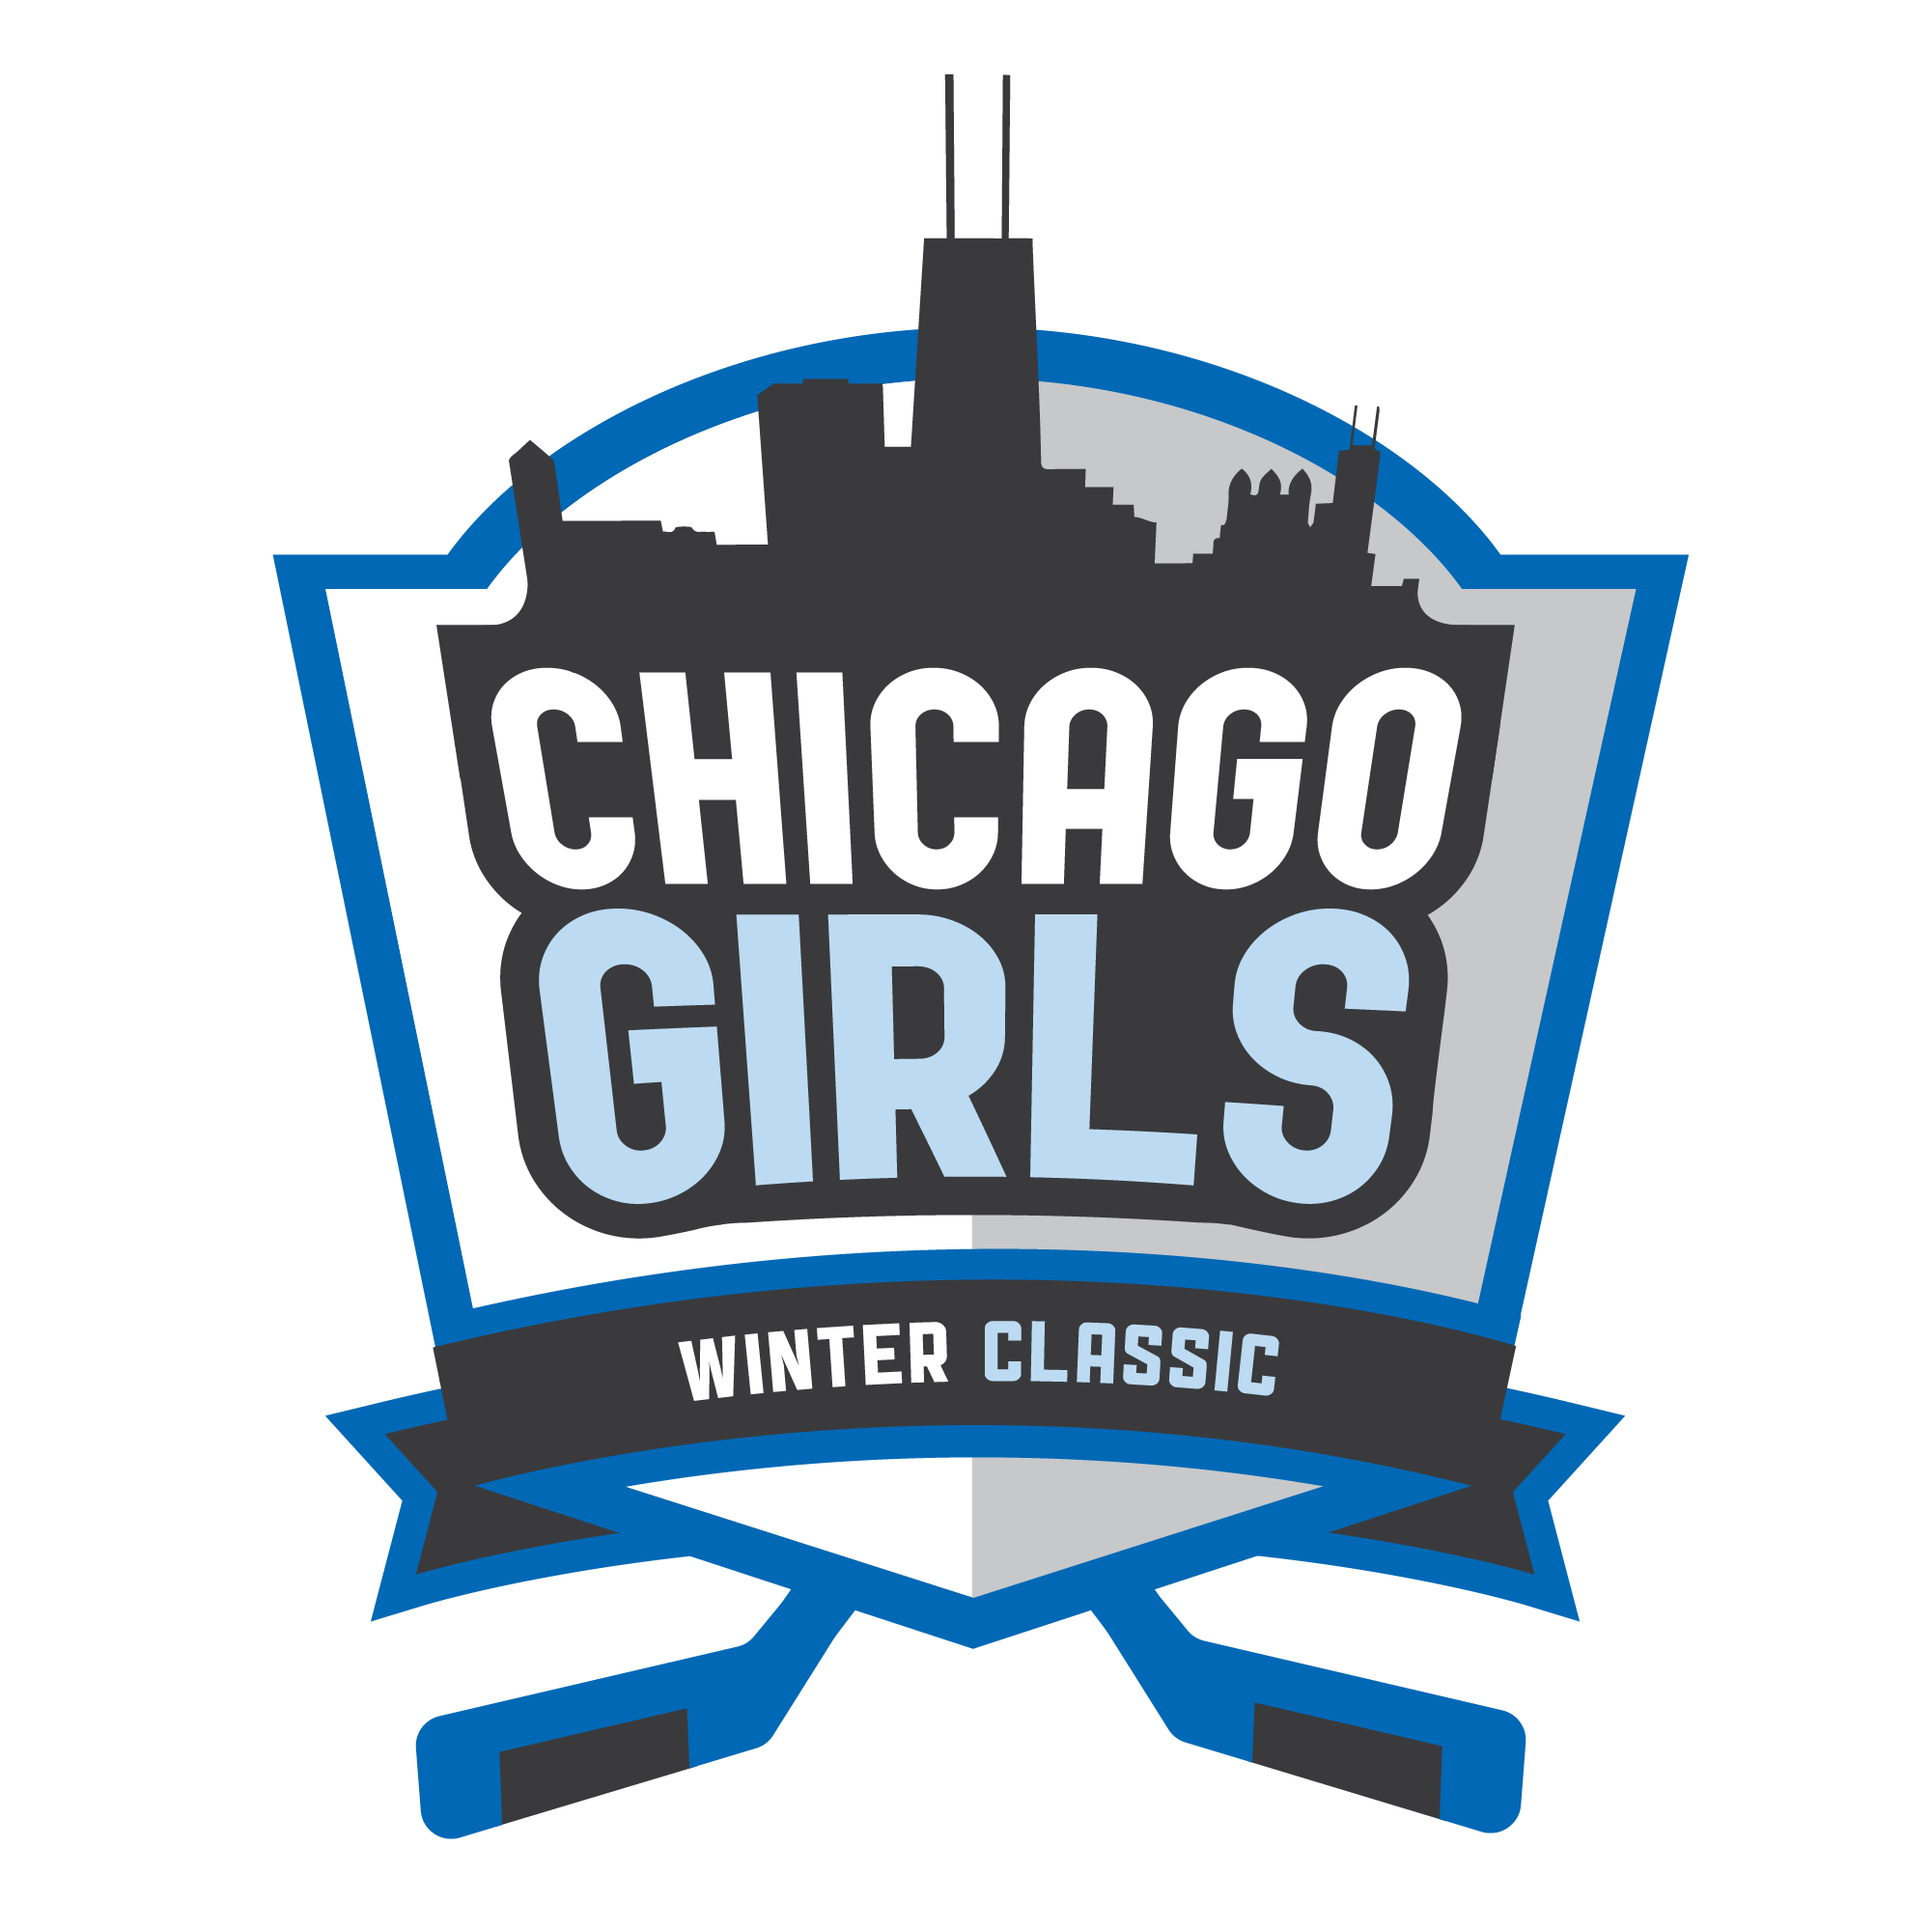 CHICAGO GIRLS WINTER CLASSIC